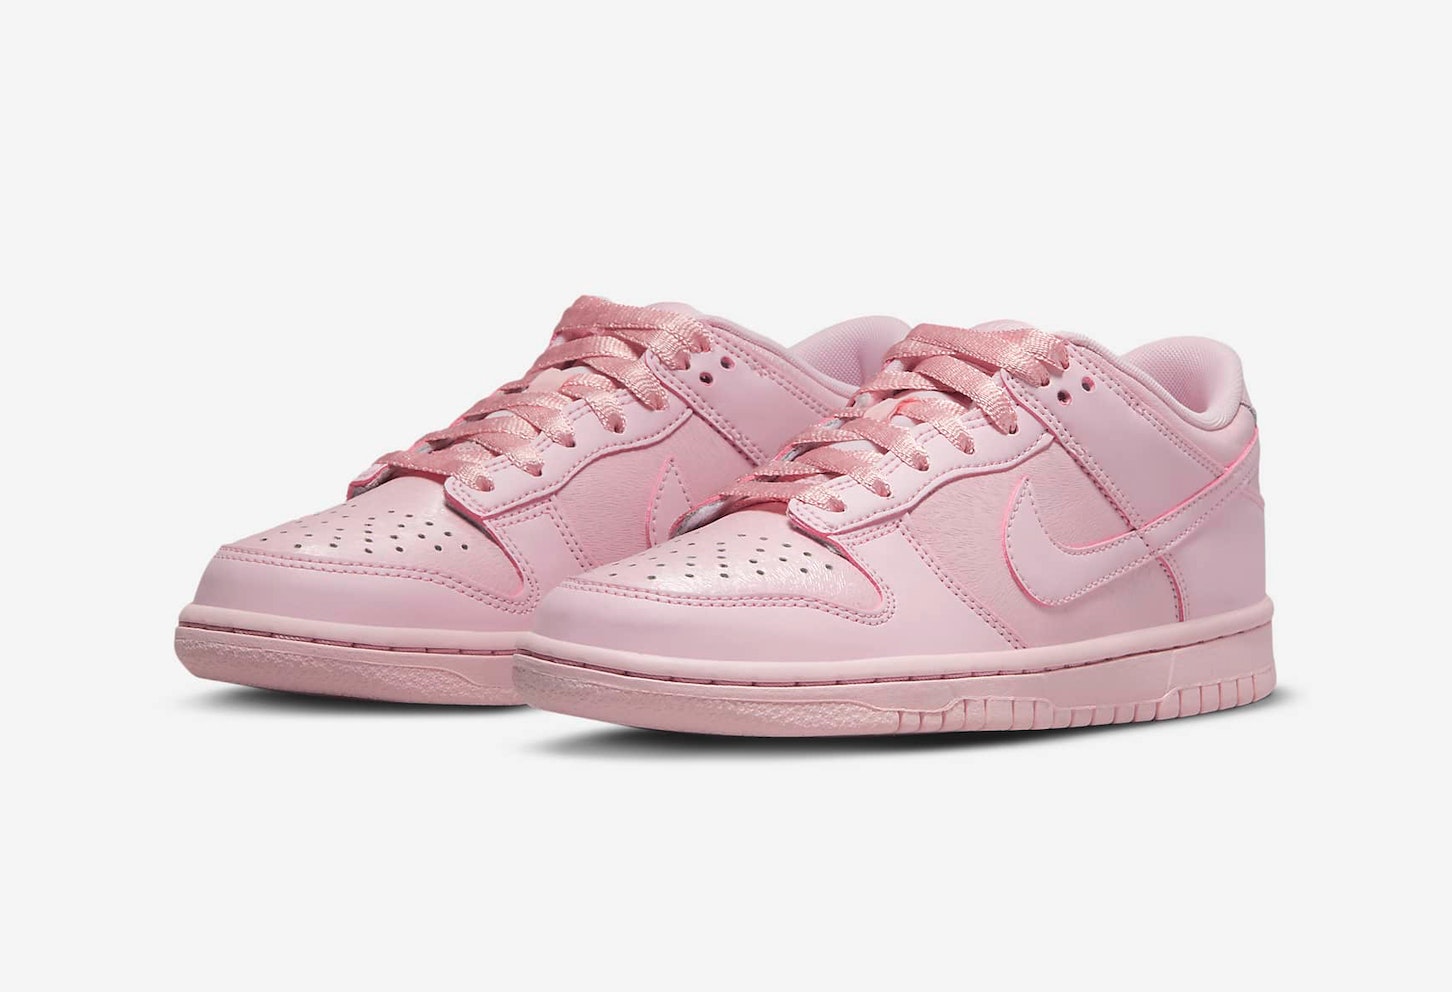 Nike Dunk Low GS "Prism Pink"